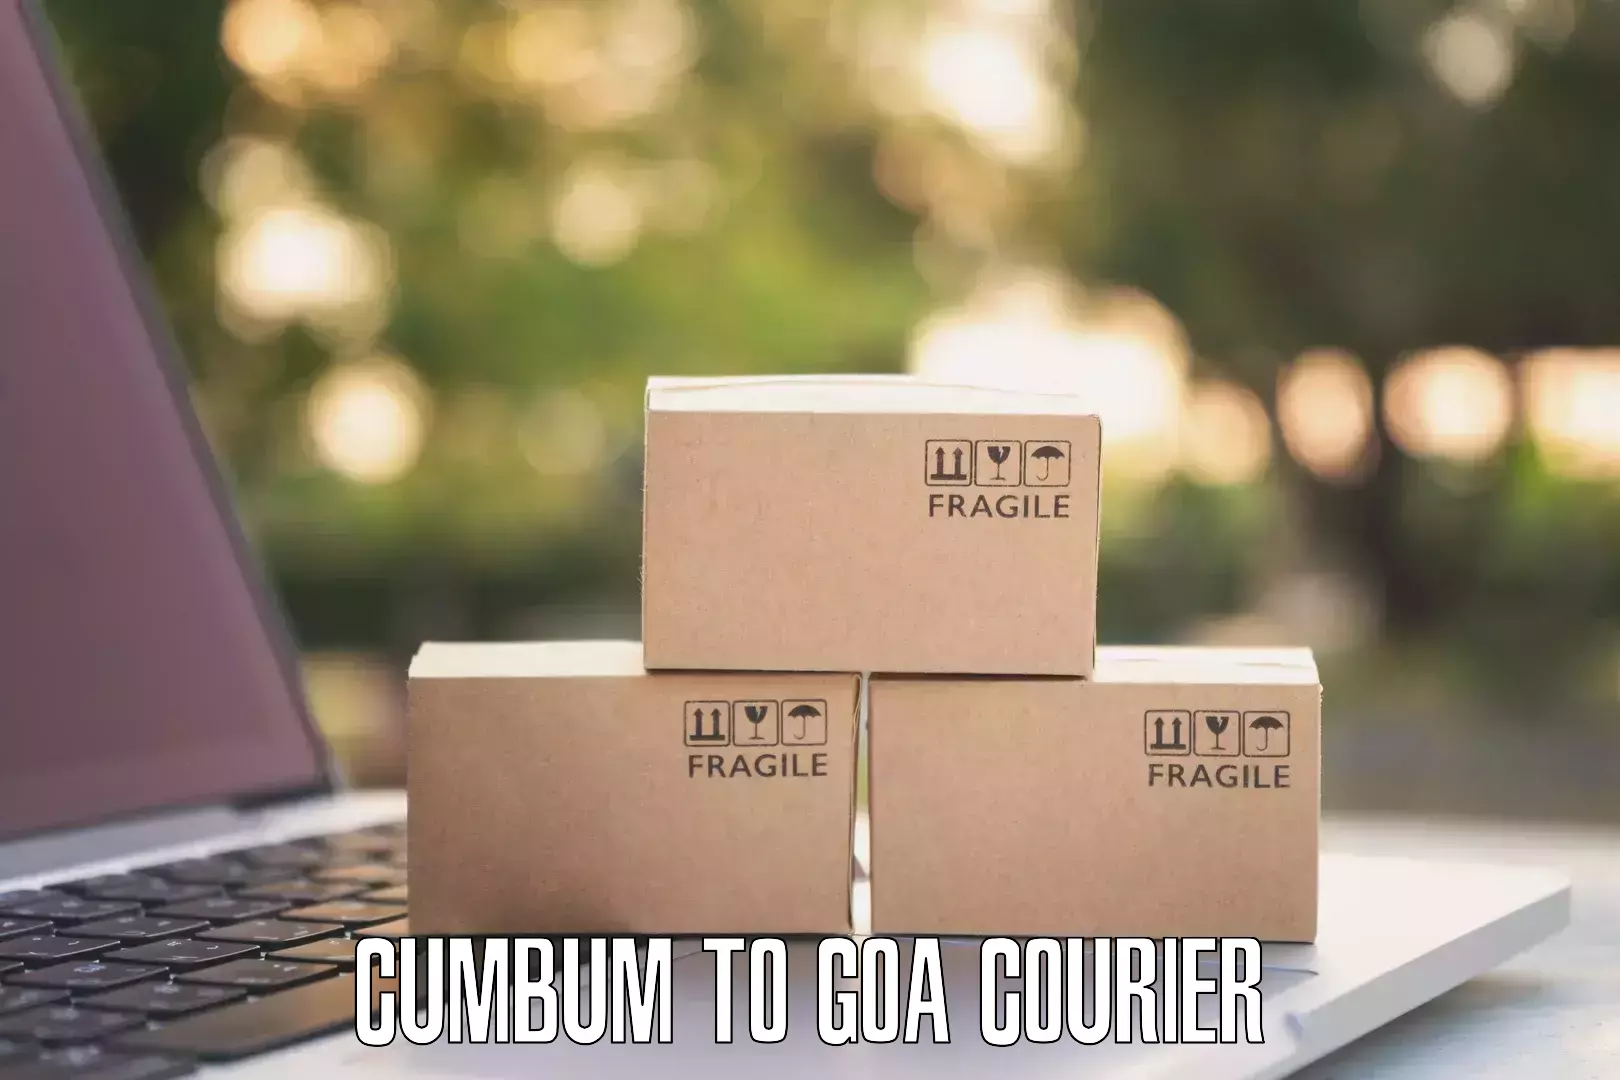 Efficient parcel tracking Cumbum to Bicholim